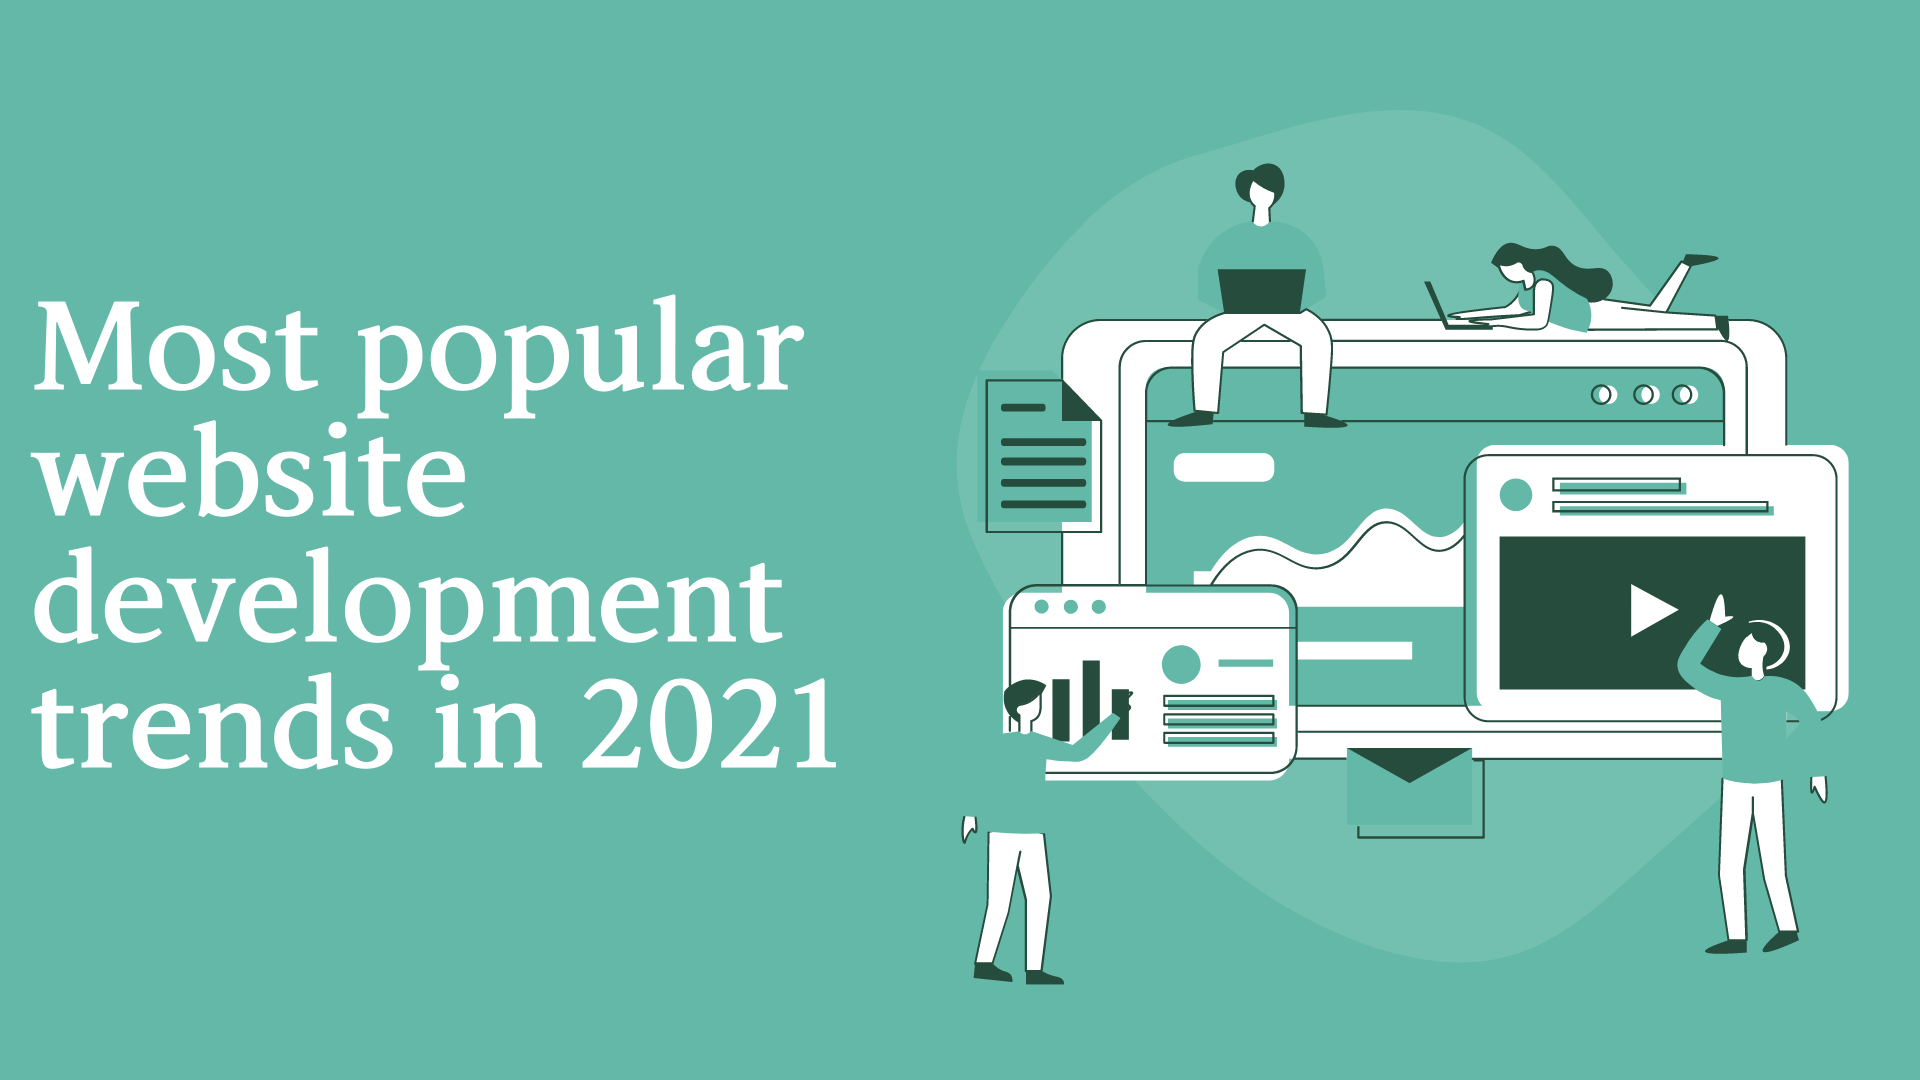 Most popular website development trends in 2021